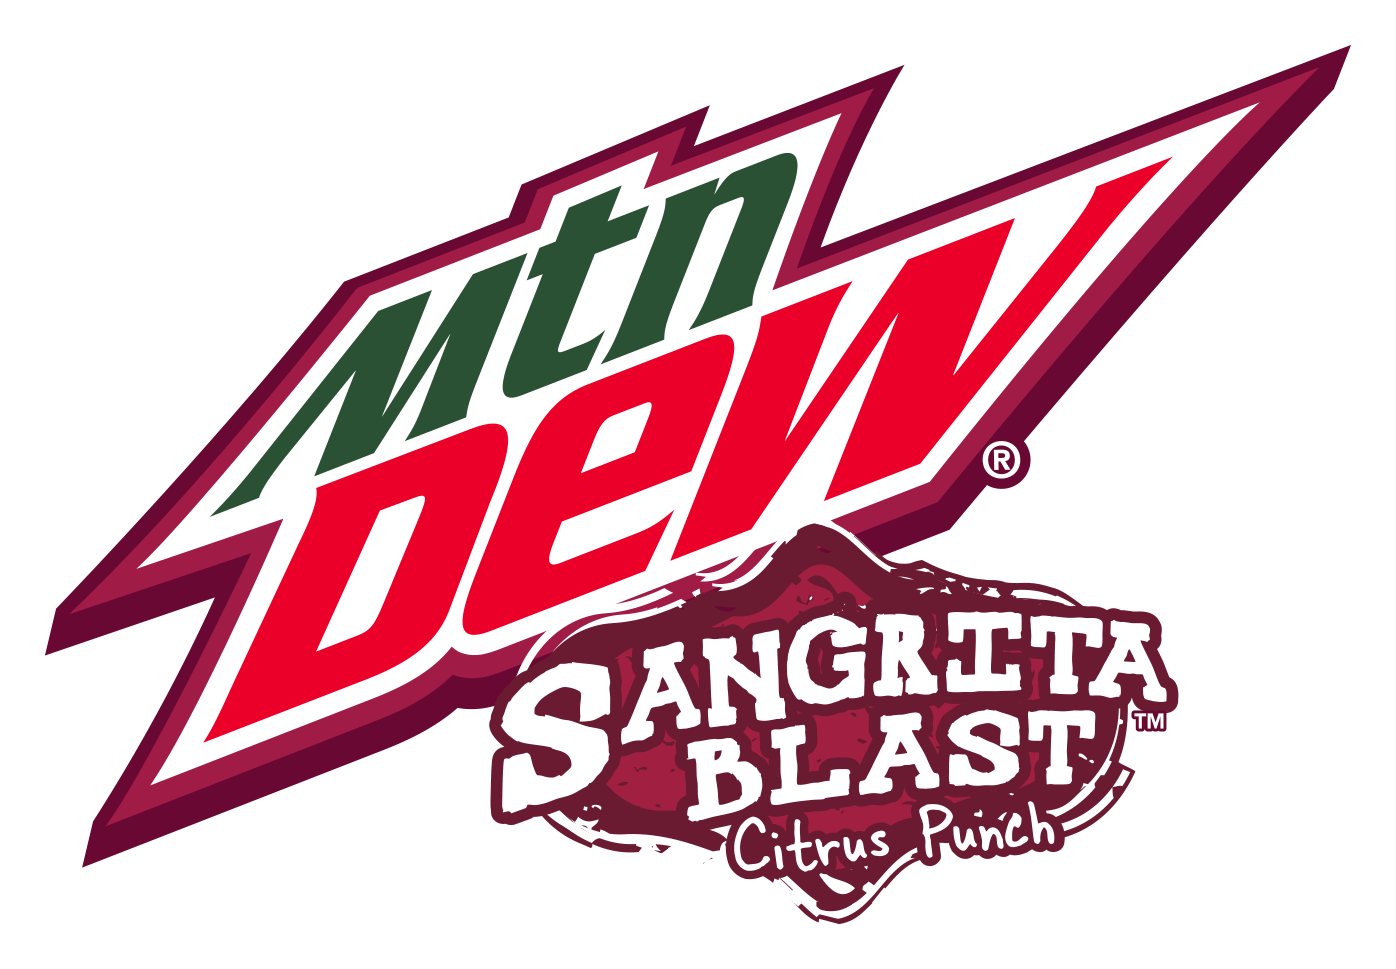 Black Mtn Dew Logo - Sangrita Blast | Mountain Dew Wiki | FANDOM powered by Wikia